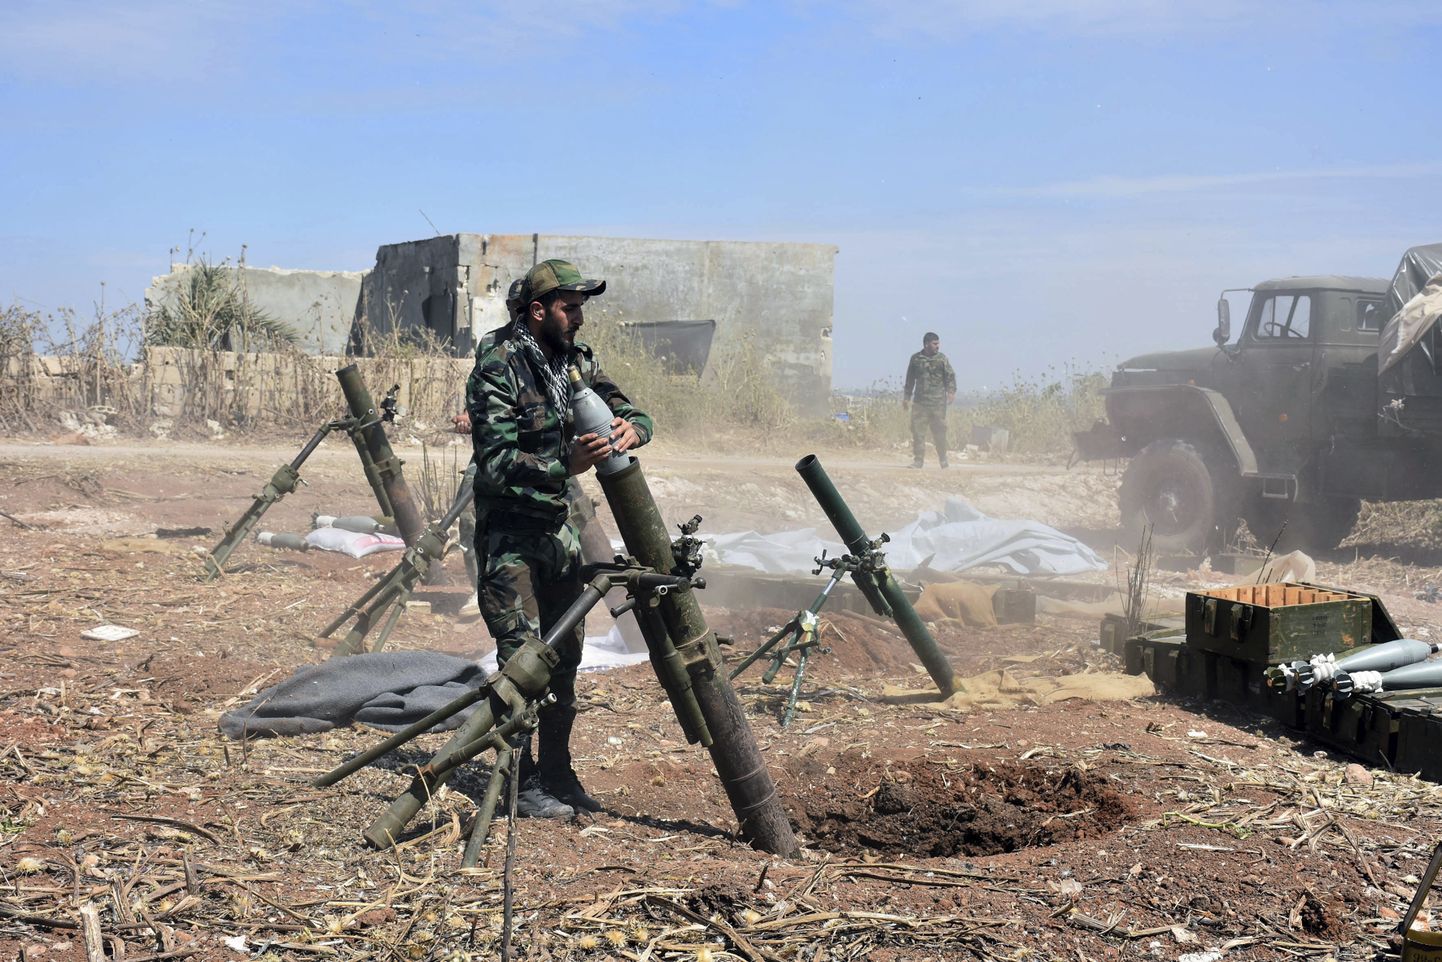 Süüria sõdurid valmistuvad tulistama miinipildujast mässulisi Hama provintsis asuvas Kfar Nabuda külas.